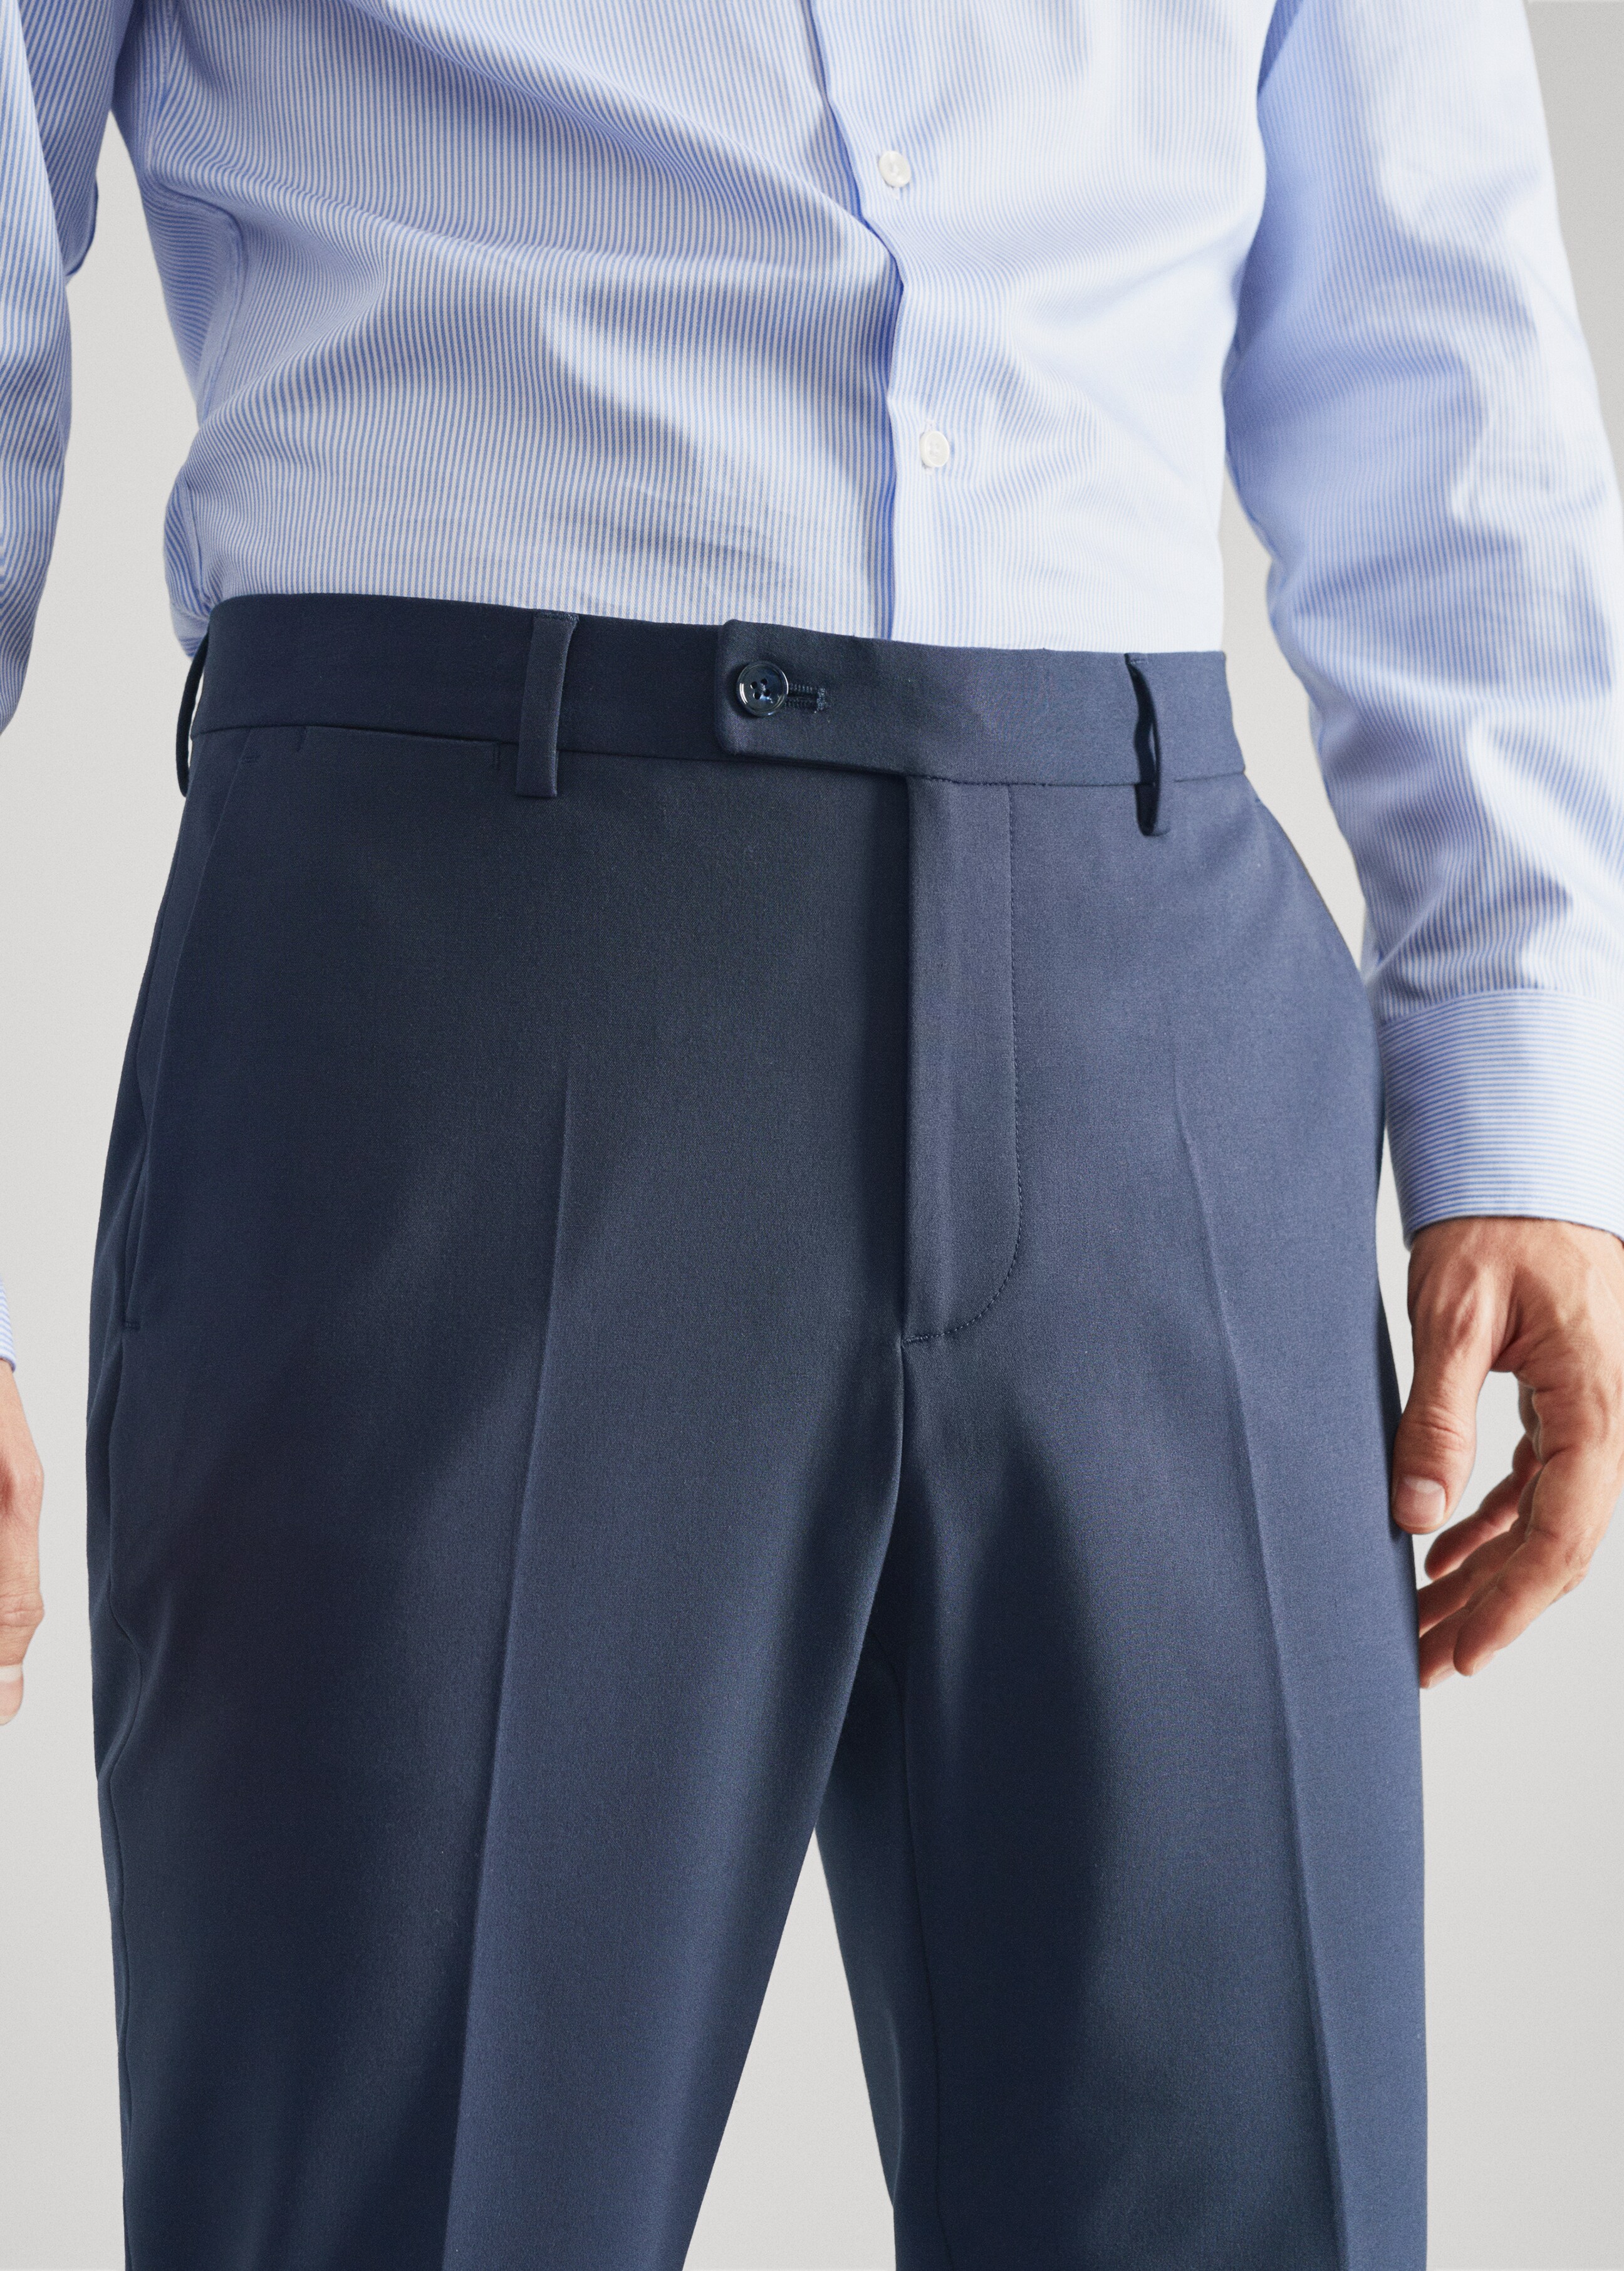 Pantalón traje slim fit - Detalle del artículo 1